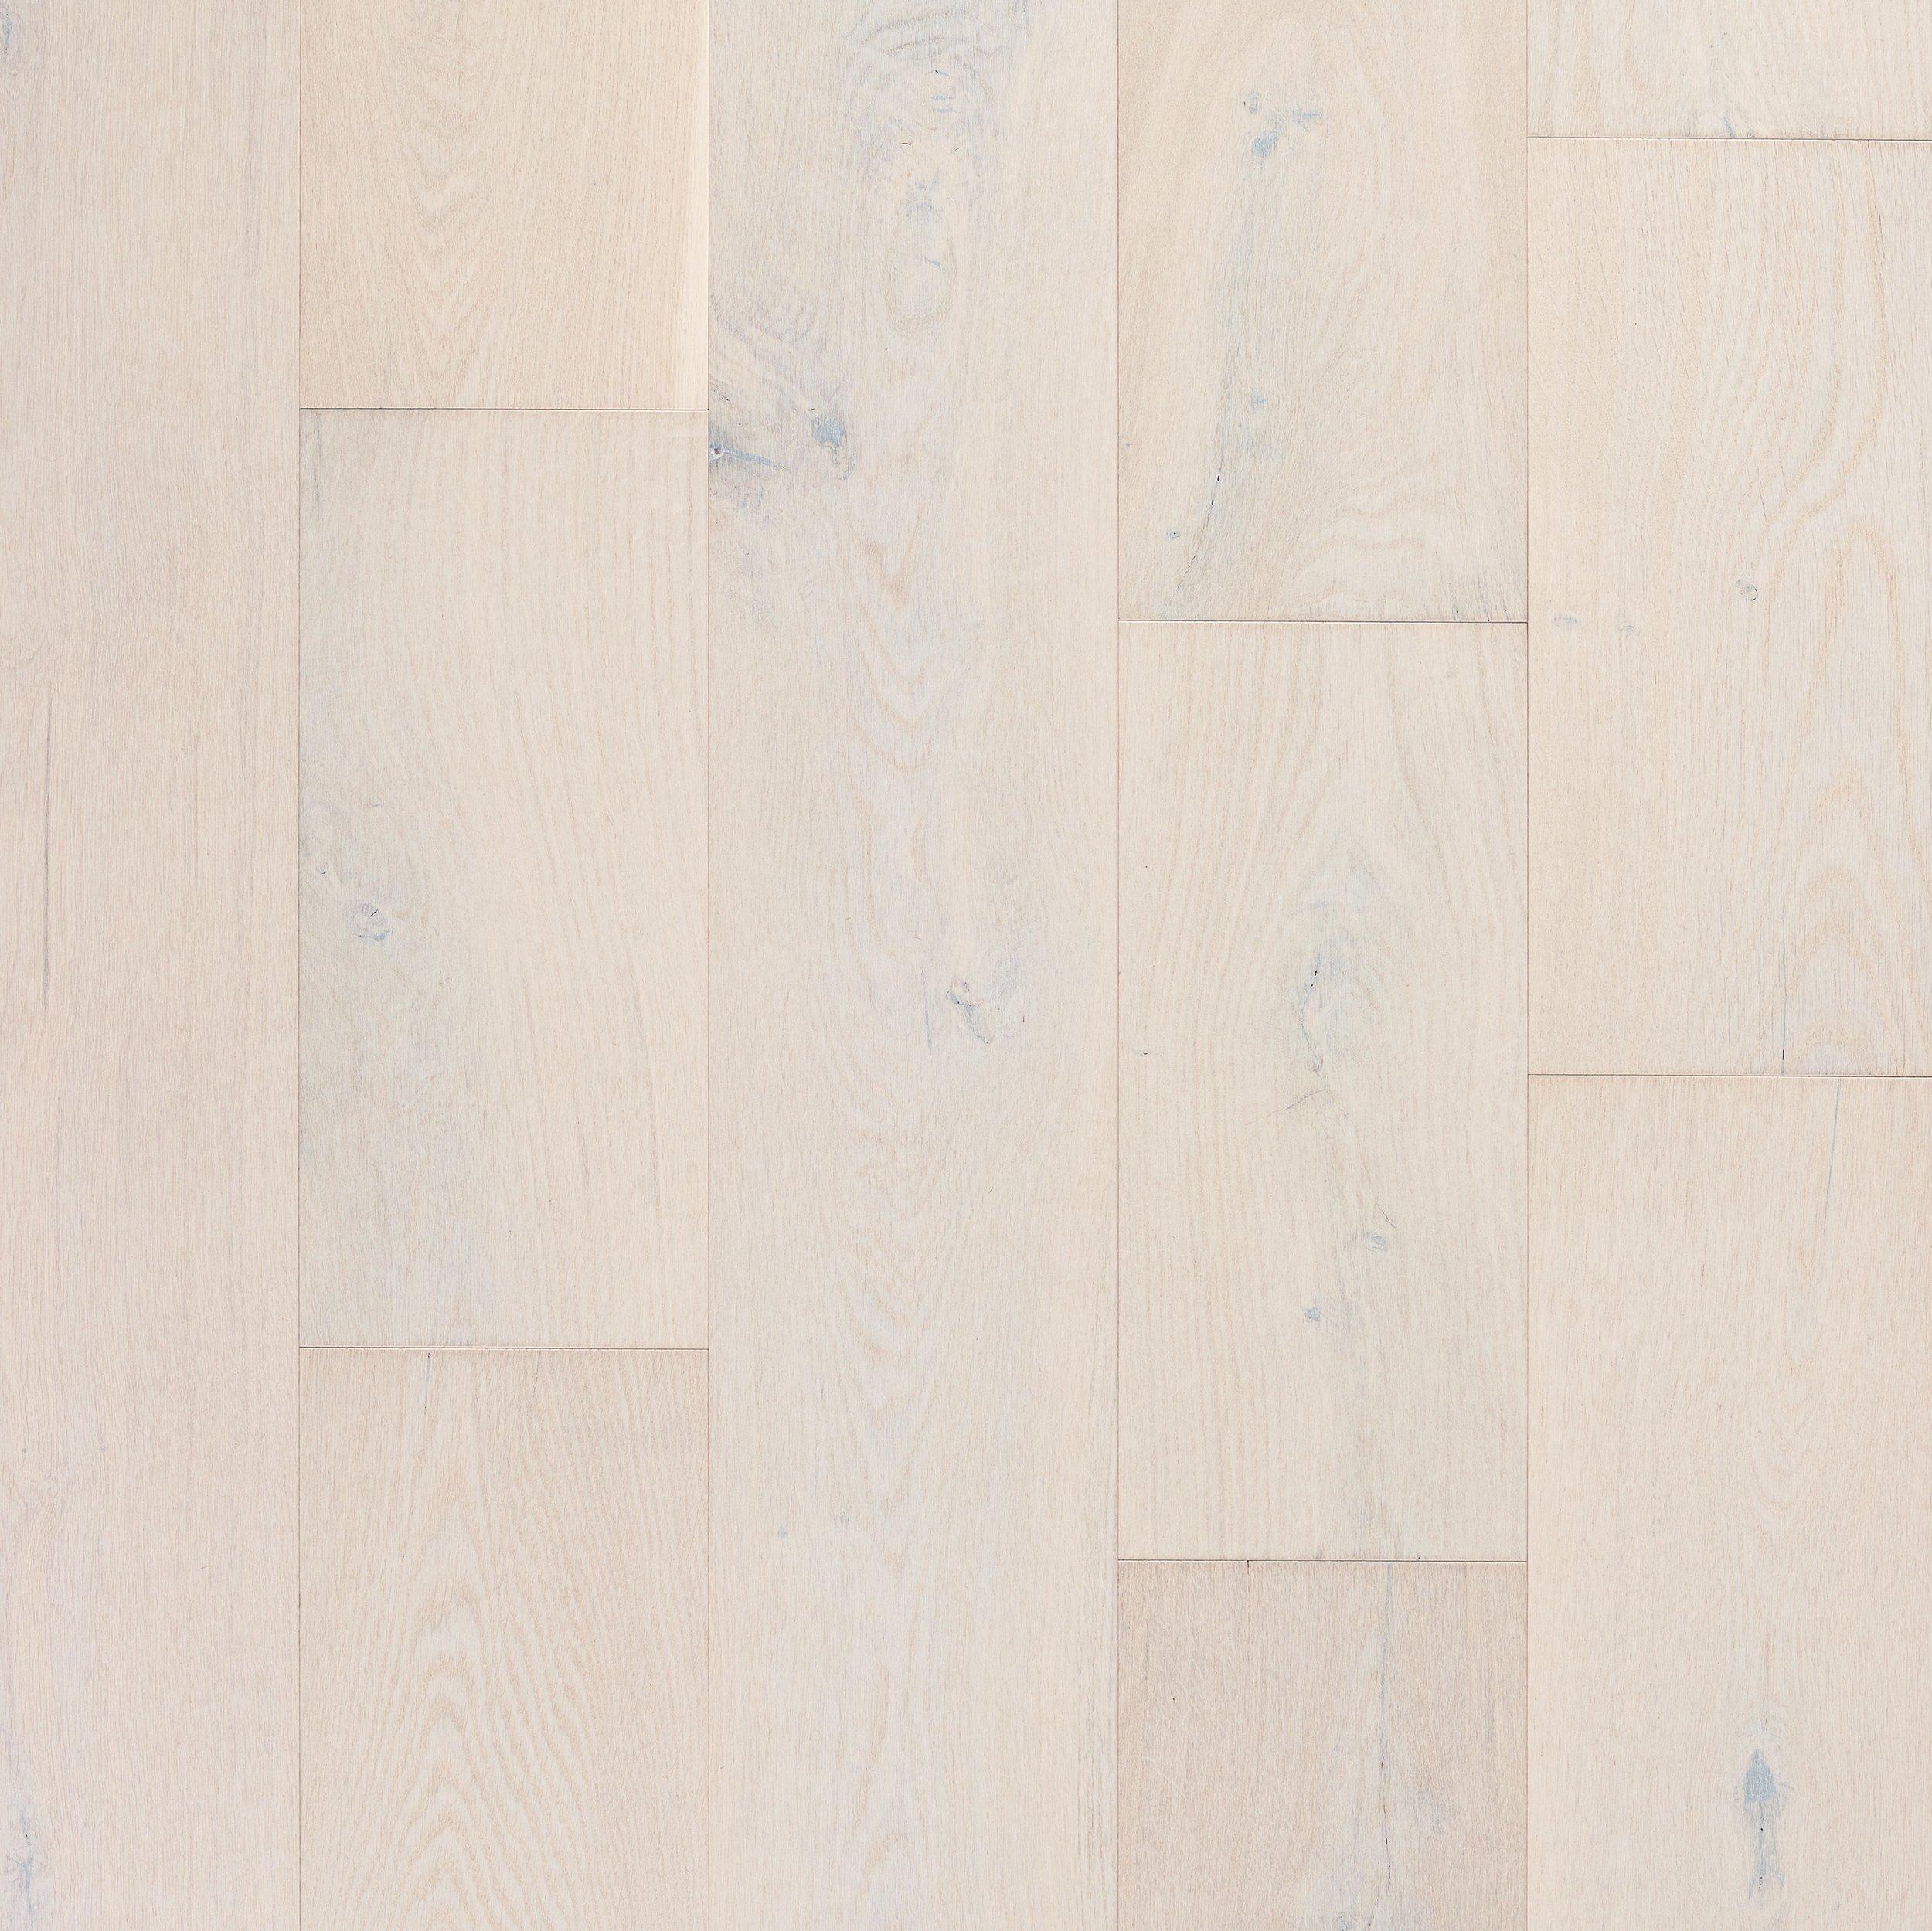 Bonita White Oak Wire Brushed, White Engineered Hardwood Flooring